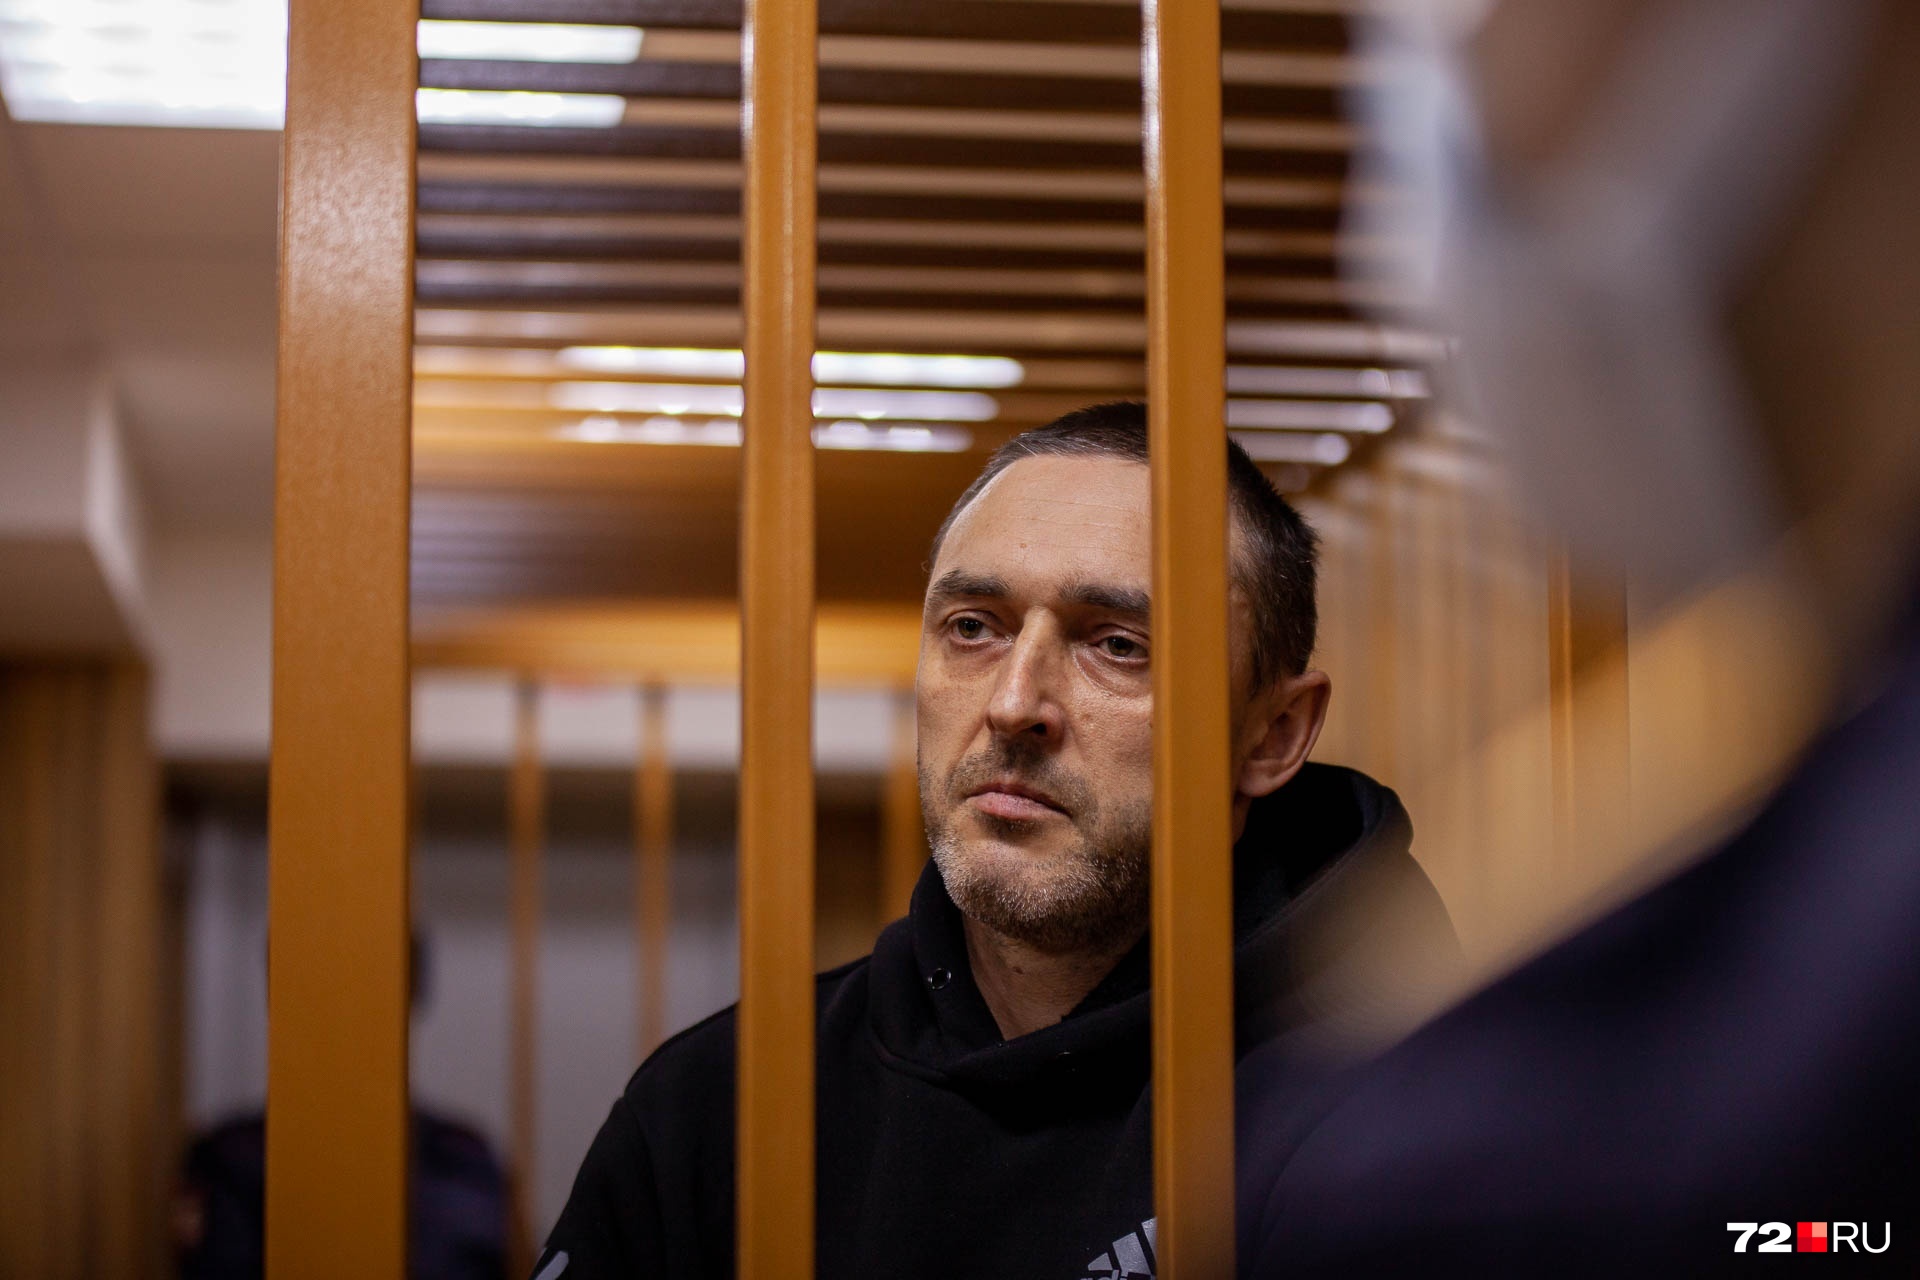 Виталий Бережной обвиняется по четырем тяжким статьям УК РФ. На судах он говорит, что он не виноват ни в чем и его пытаются подставить